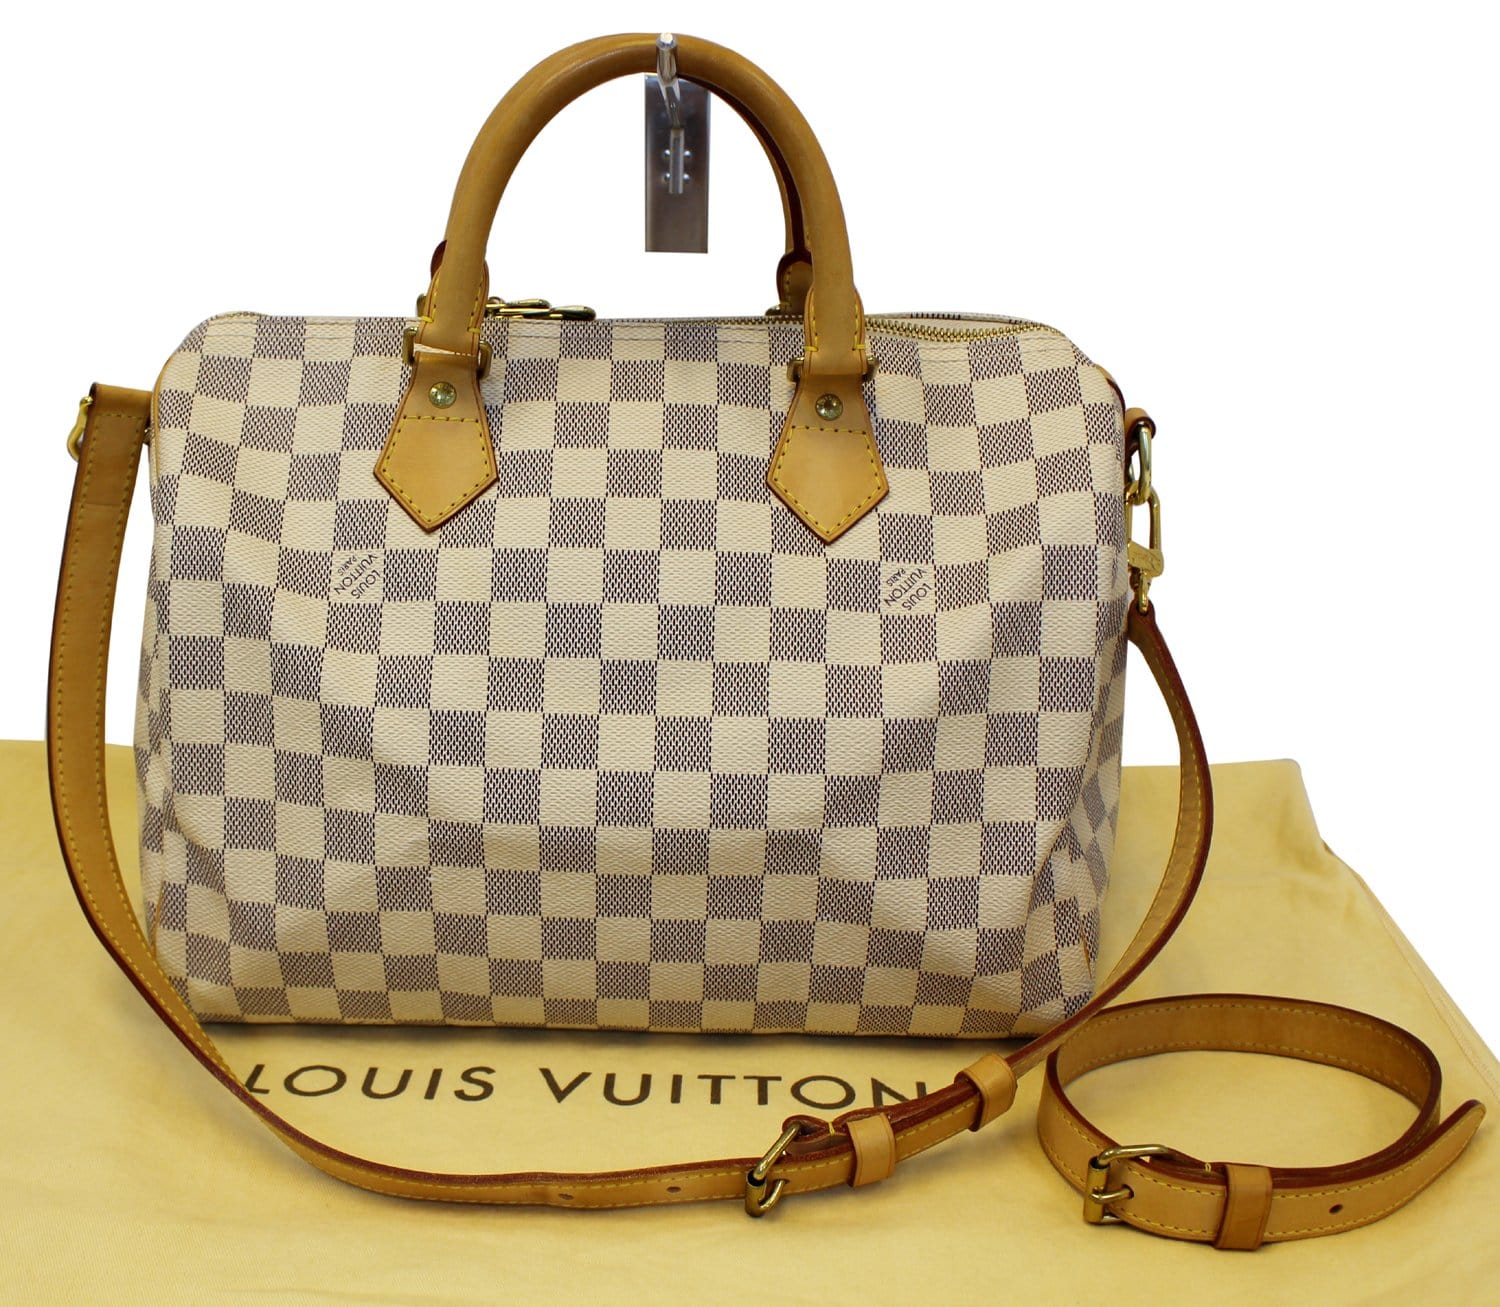 Louis Vuitton Speedy 30 - Findage